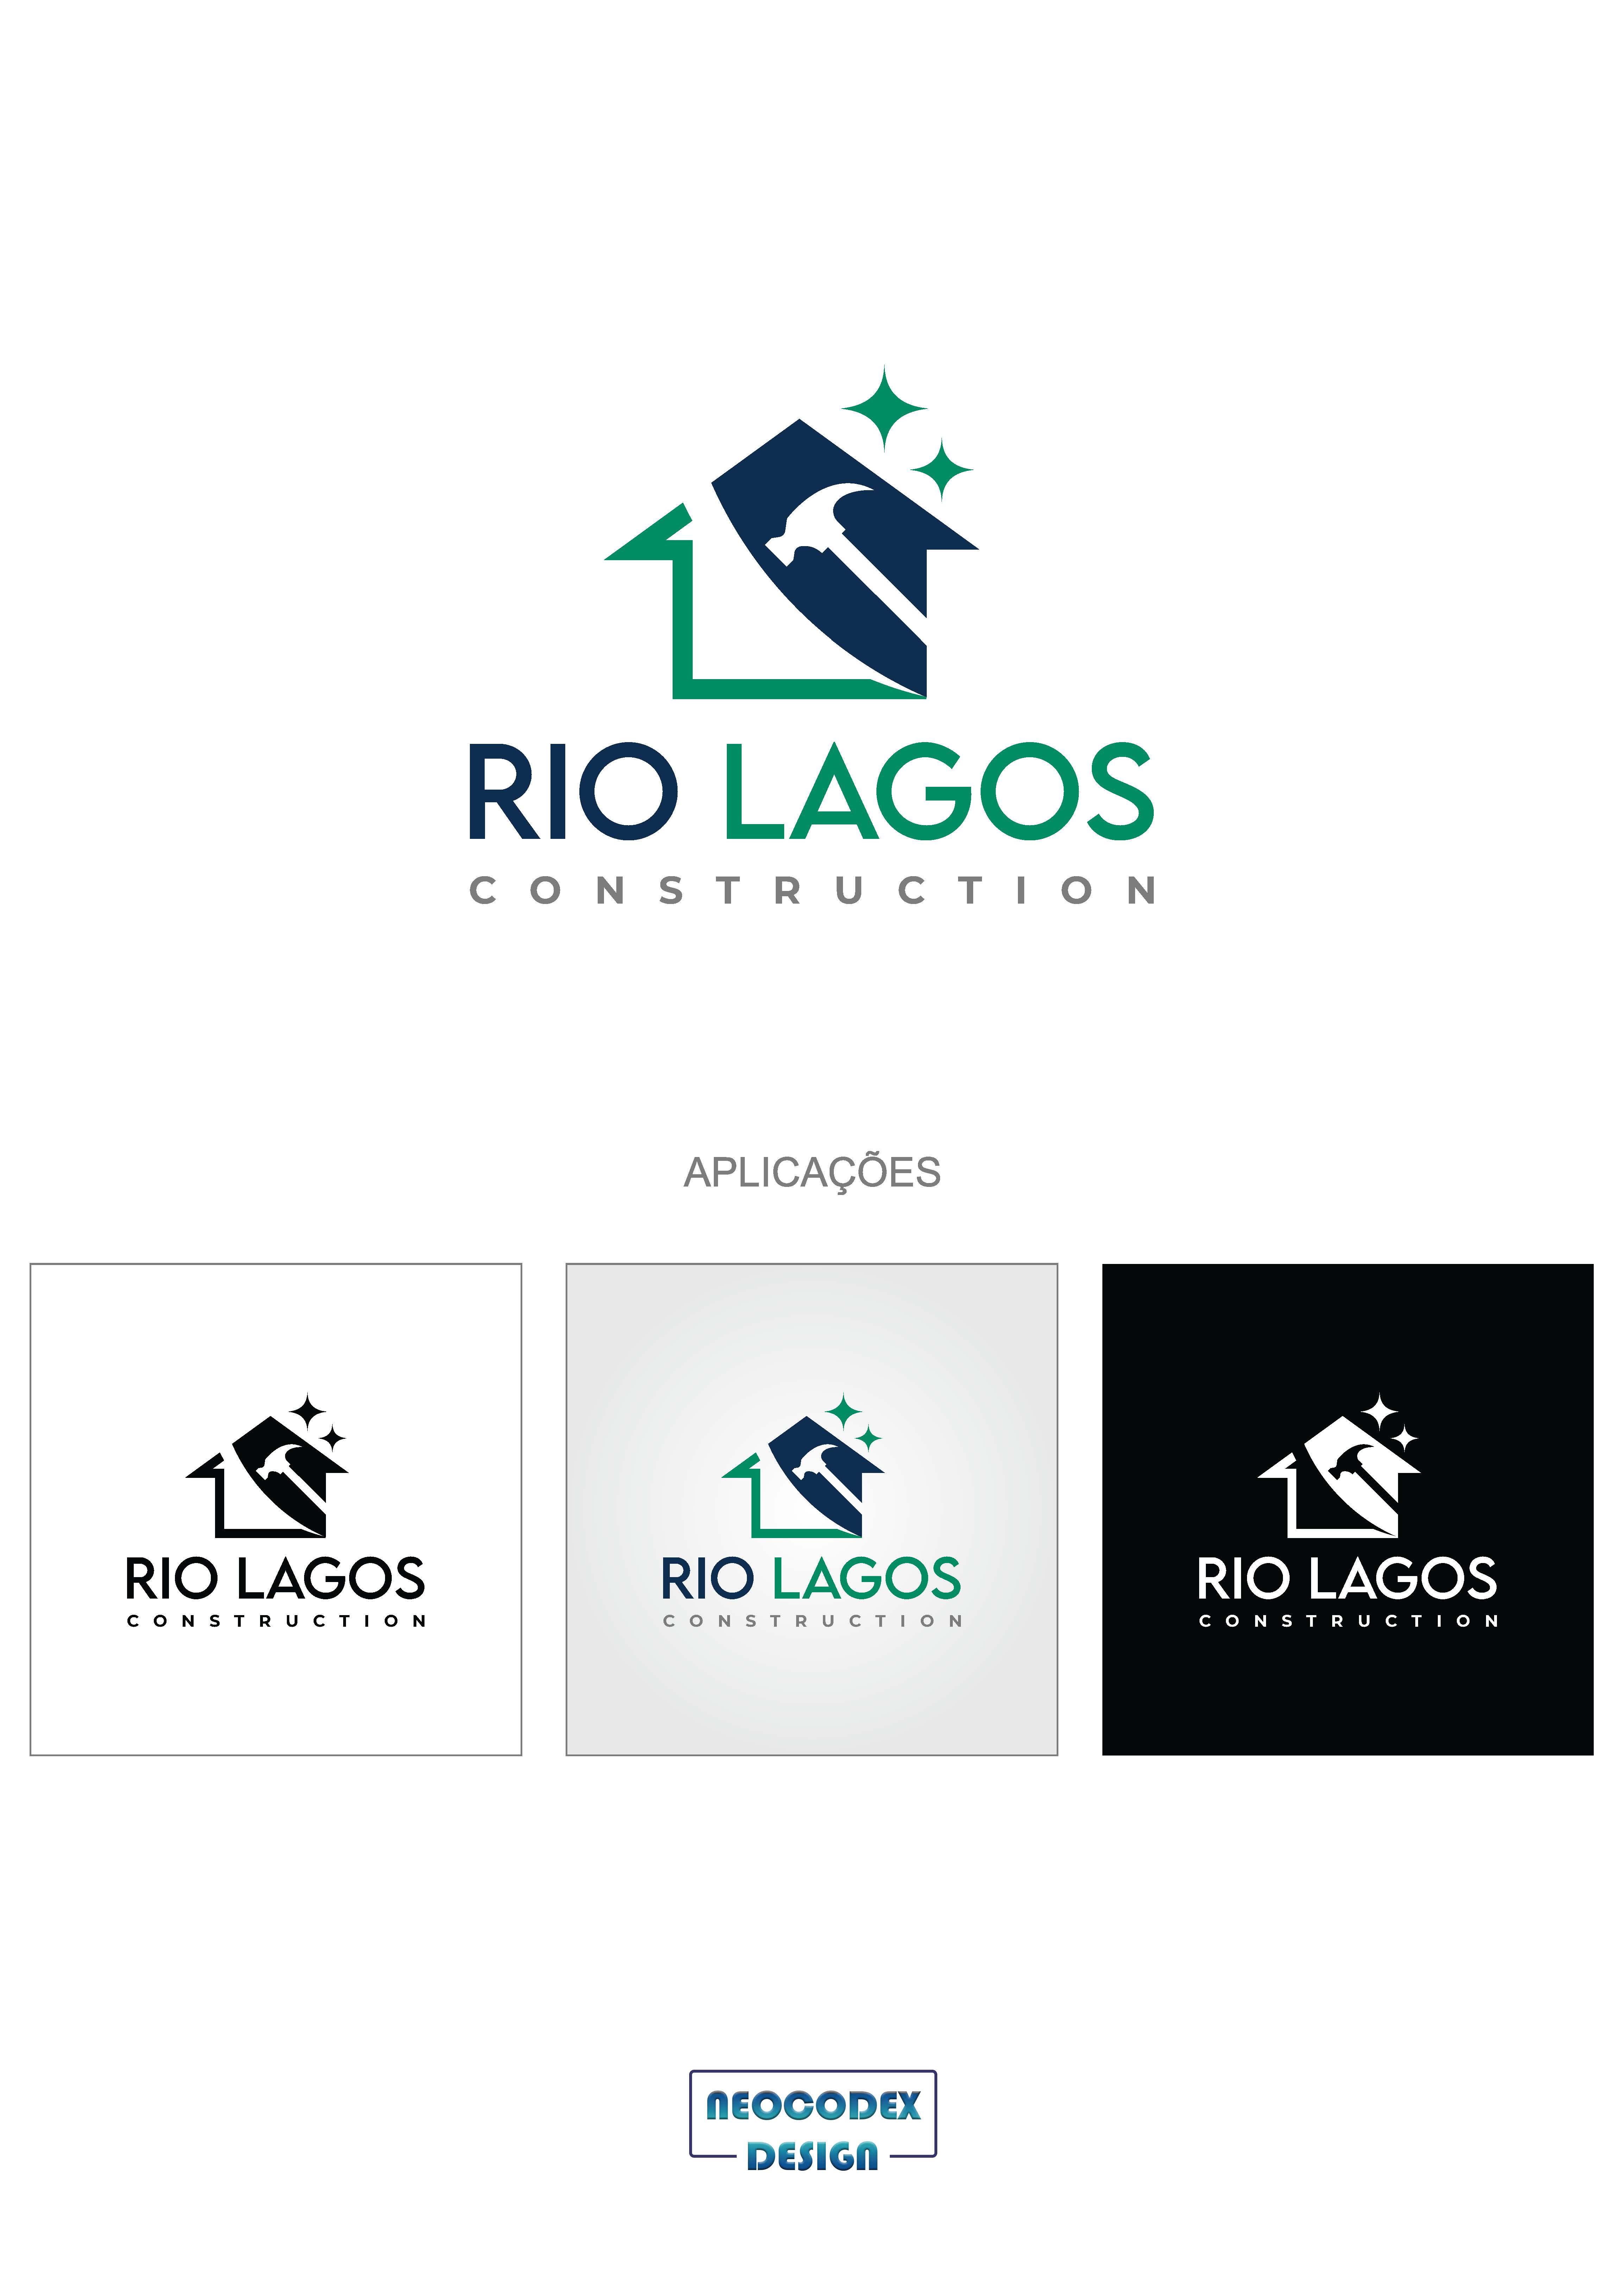 Rio Lagos Constructions